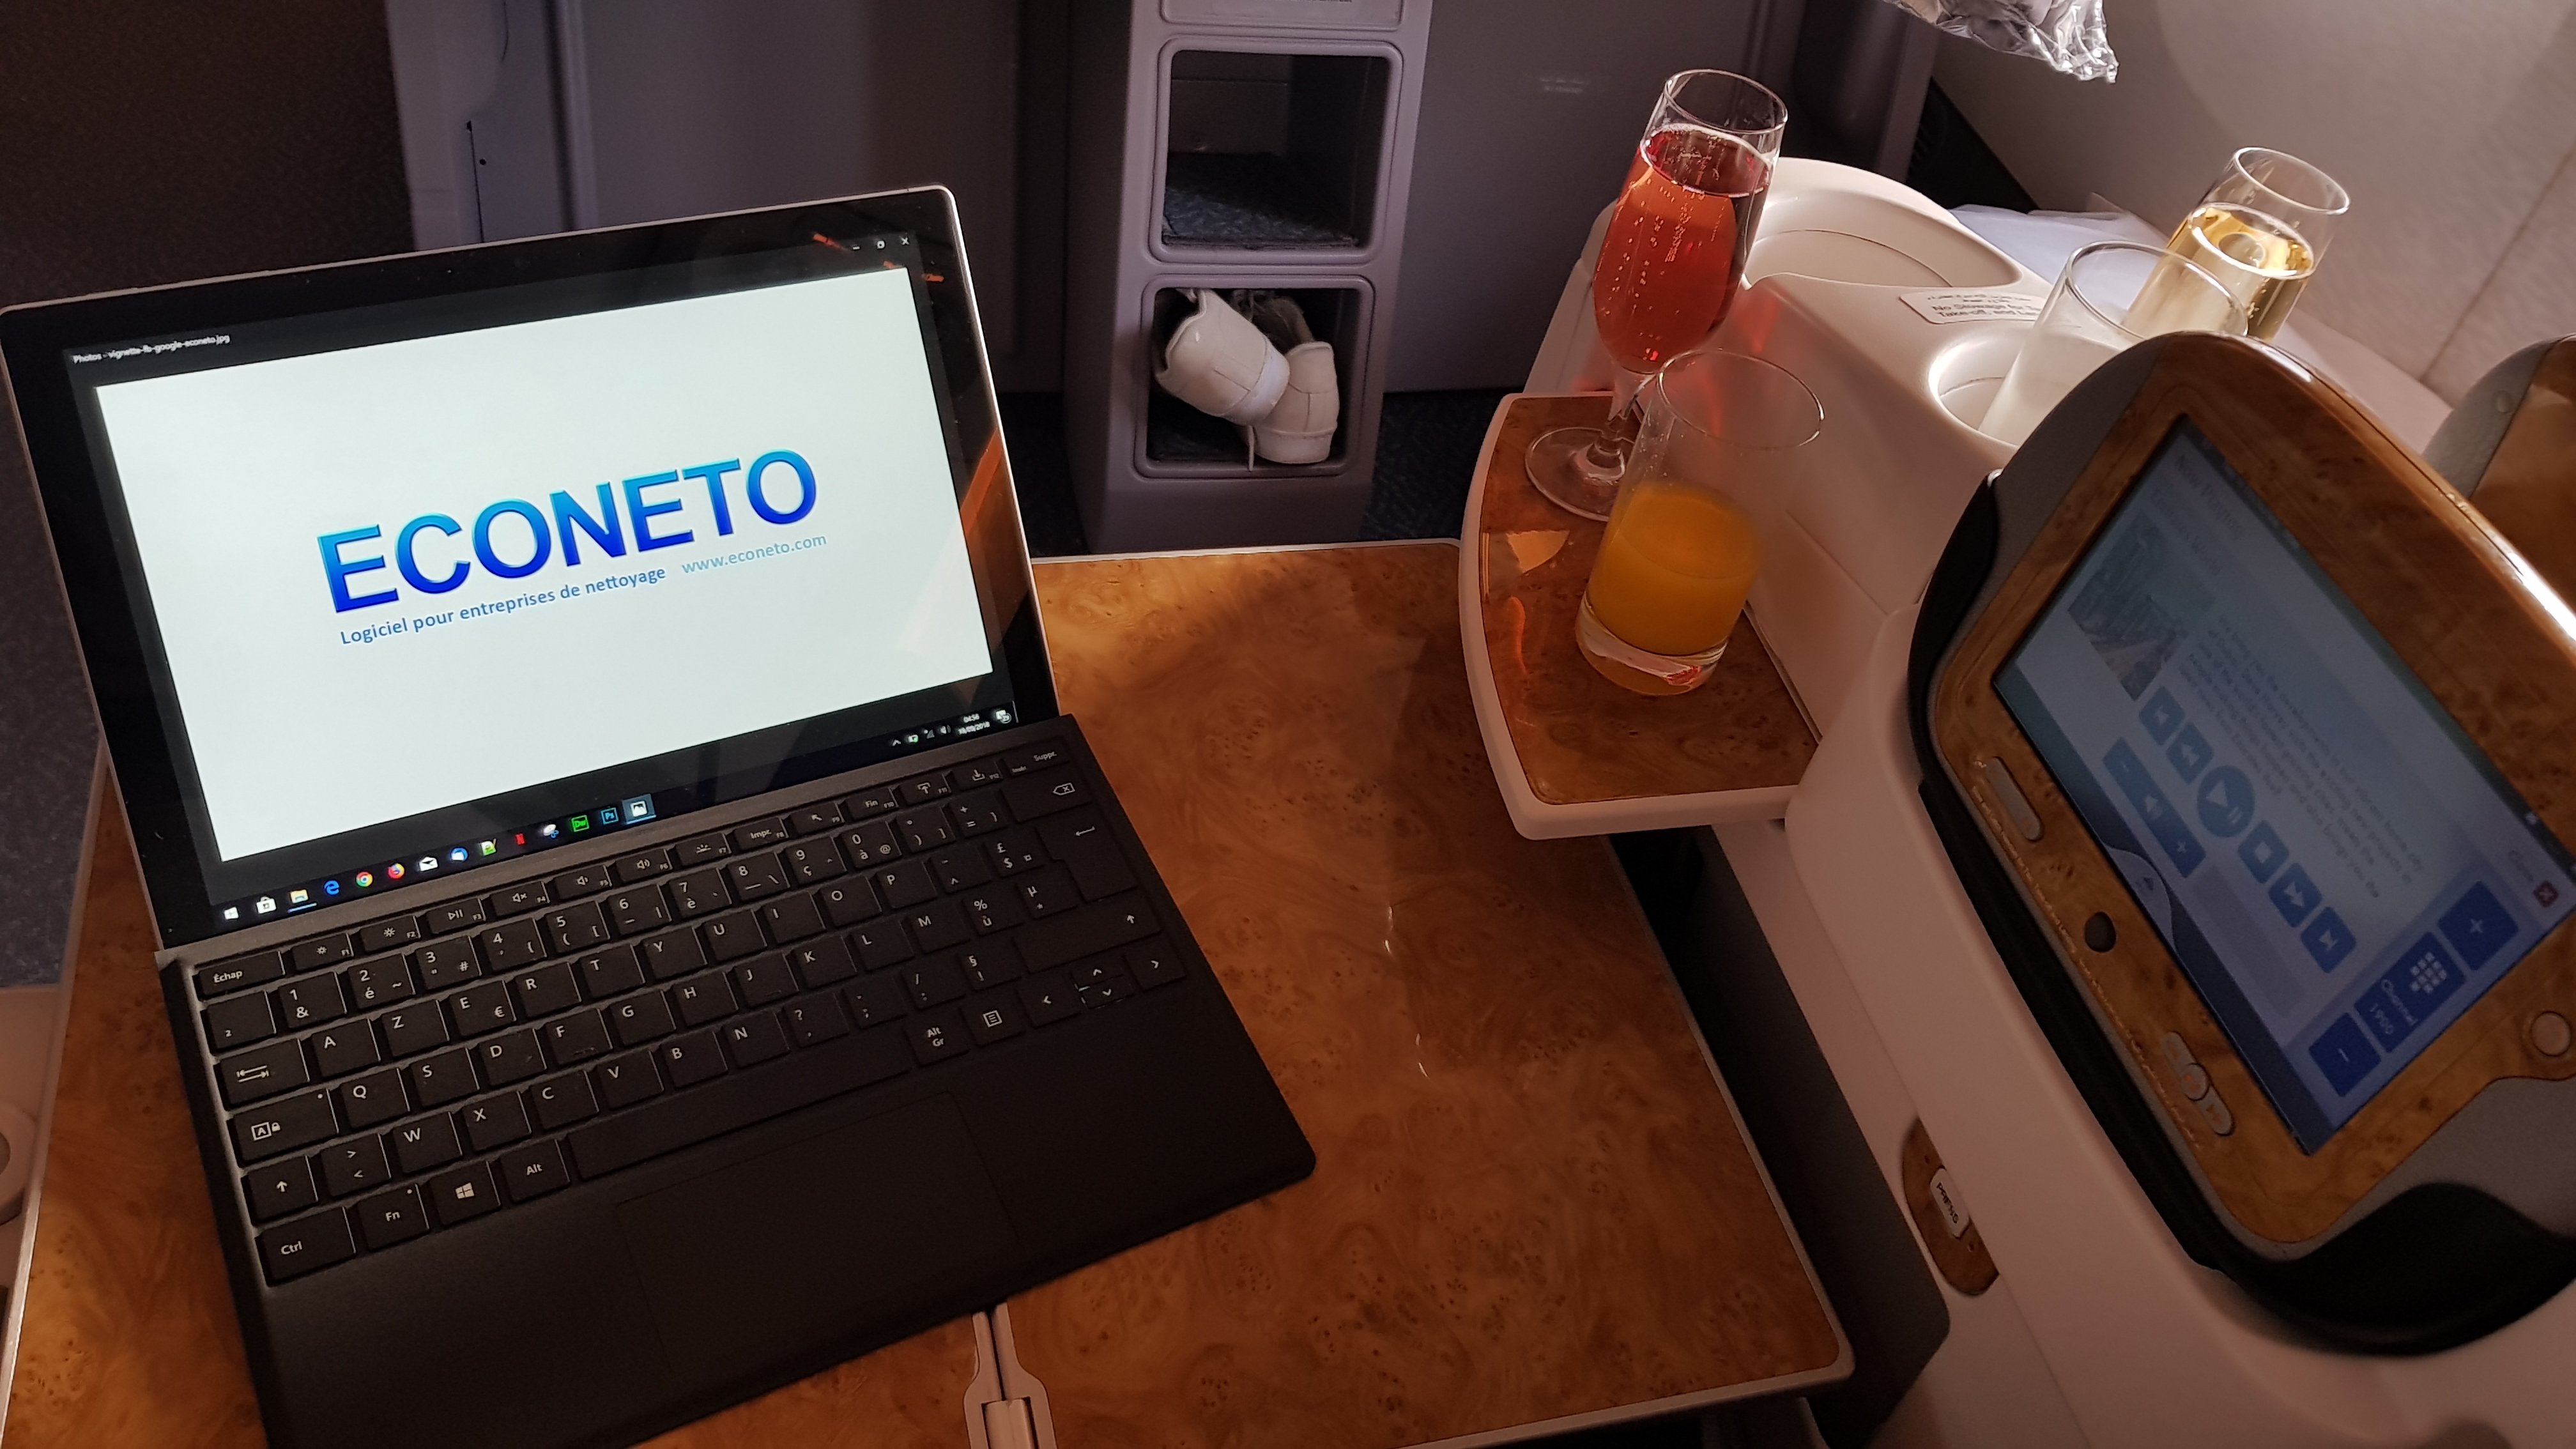 Logiciel pour entreprise de nettoyage sur une tablette tactile dans un avion